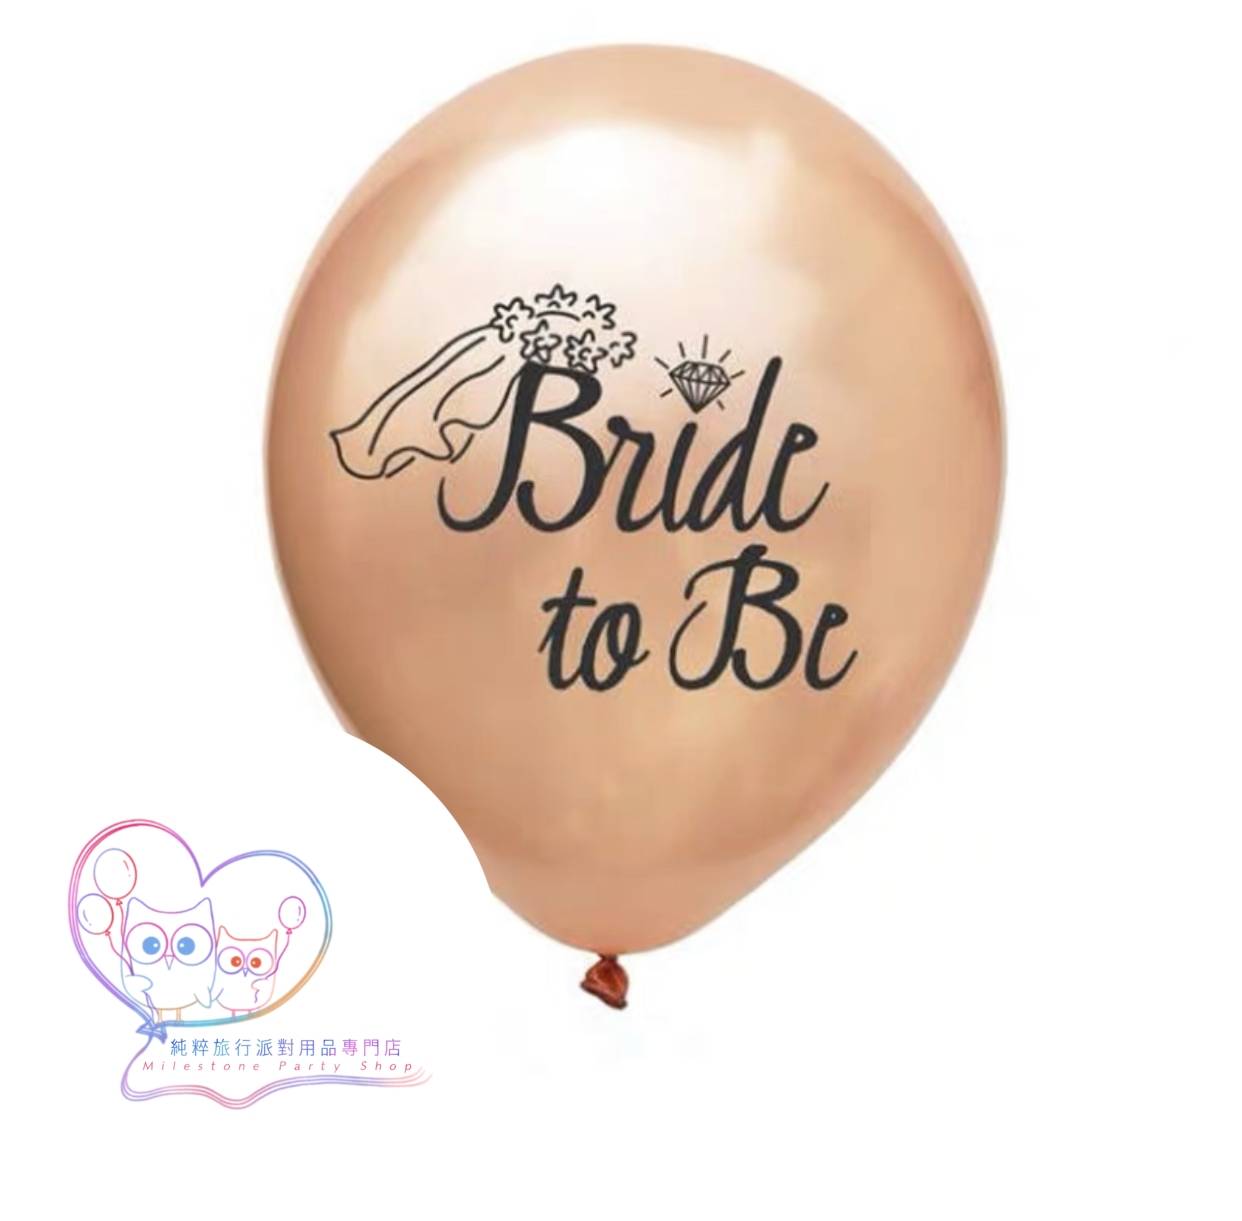 12吋乳膠氣球 (Bride to Be) (玫瑰金色) (1pc) LBL5